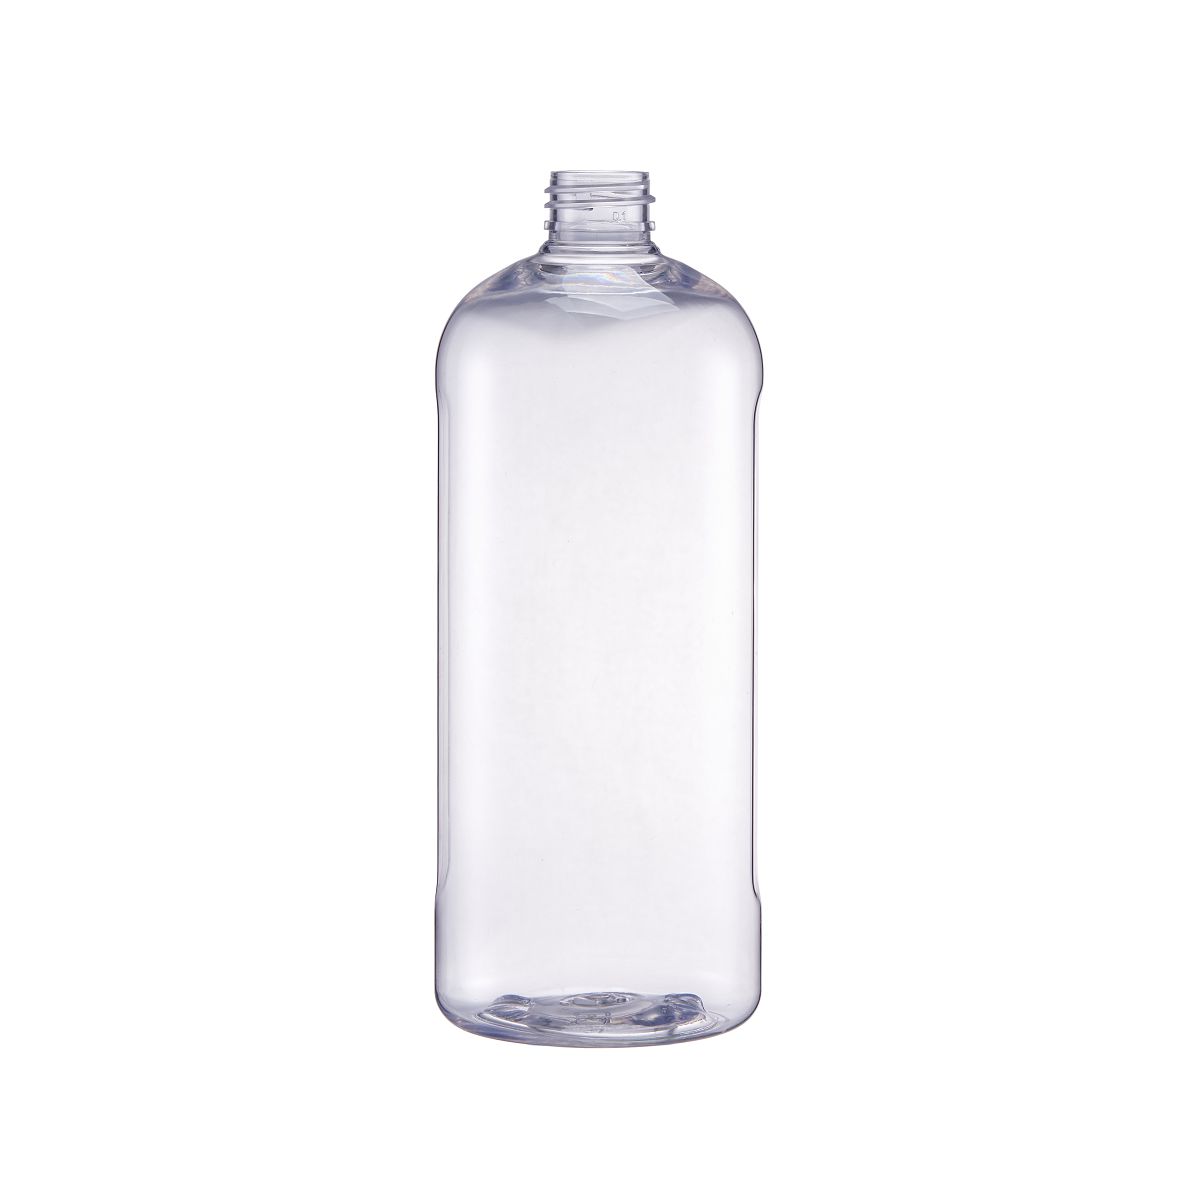 Dishwashing Bottle